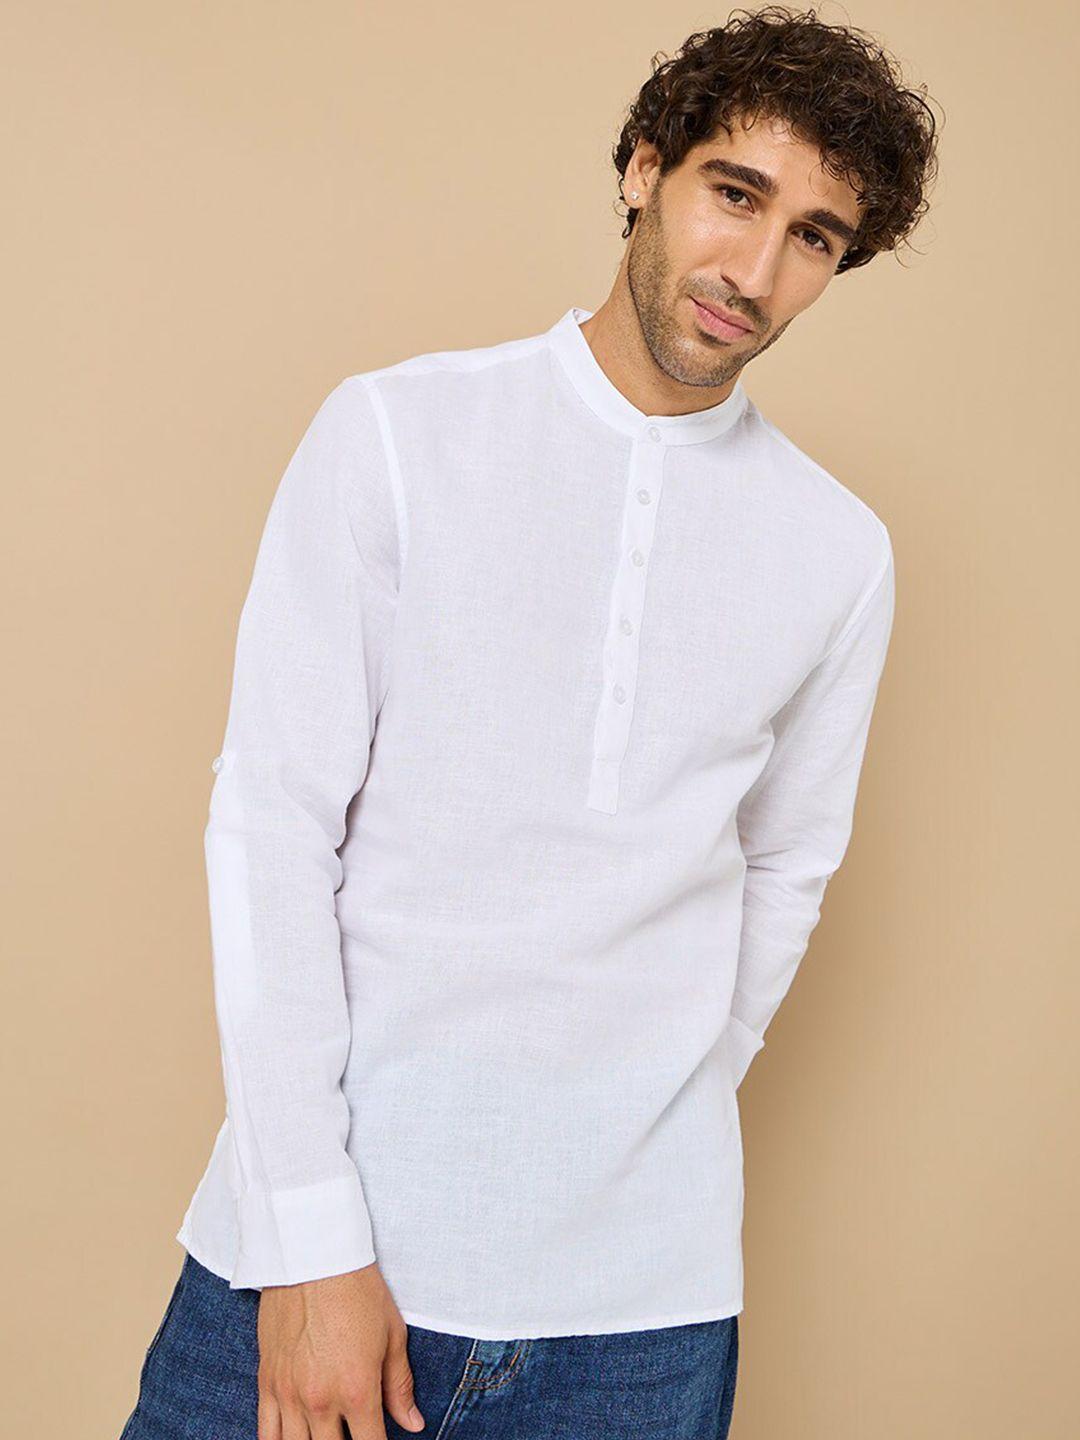 styli men white opaque casual shirt